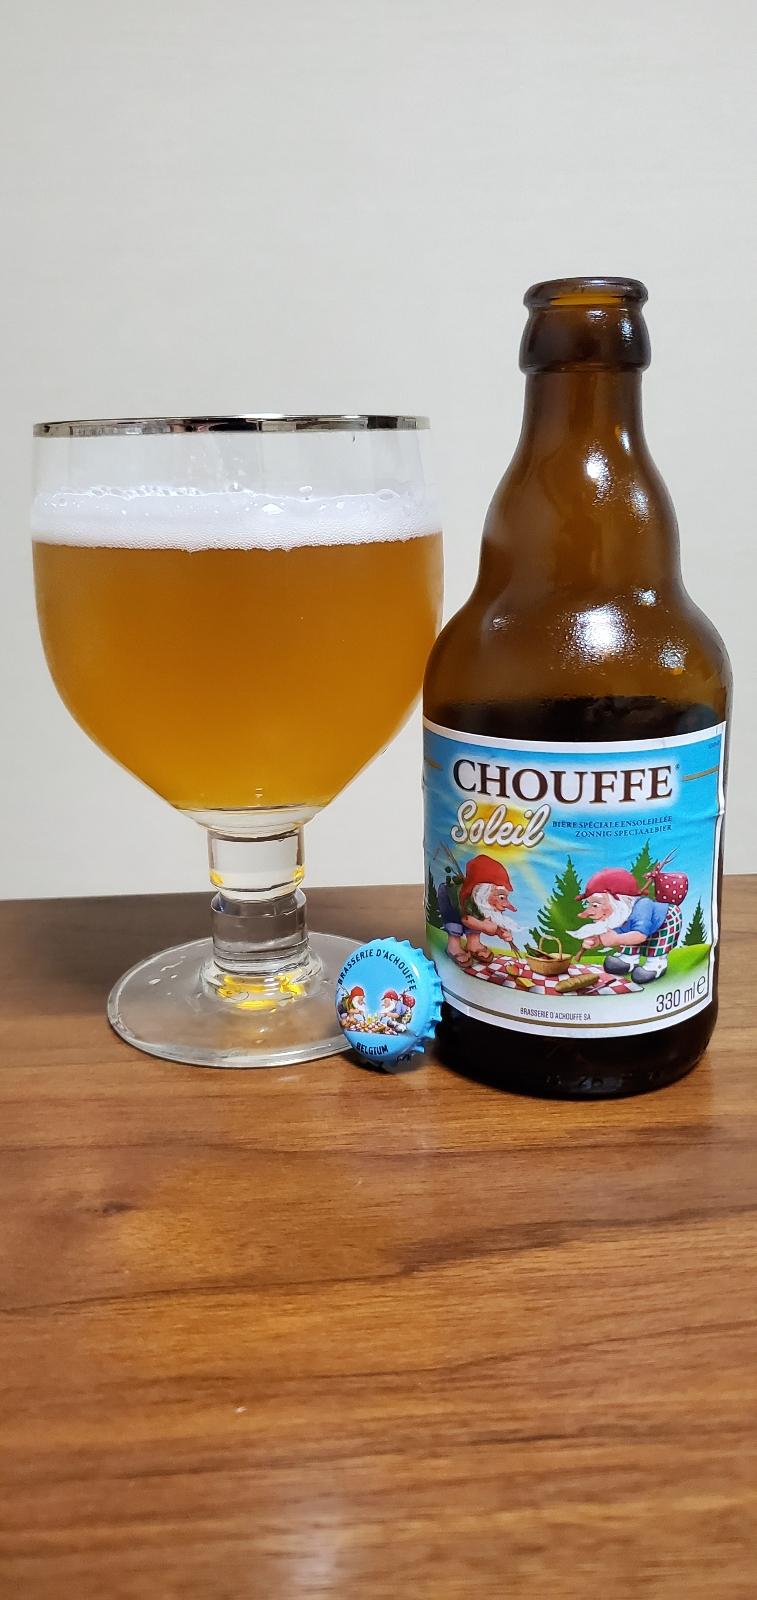 La Chouffe Bière du Soleil